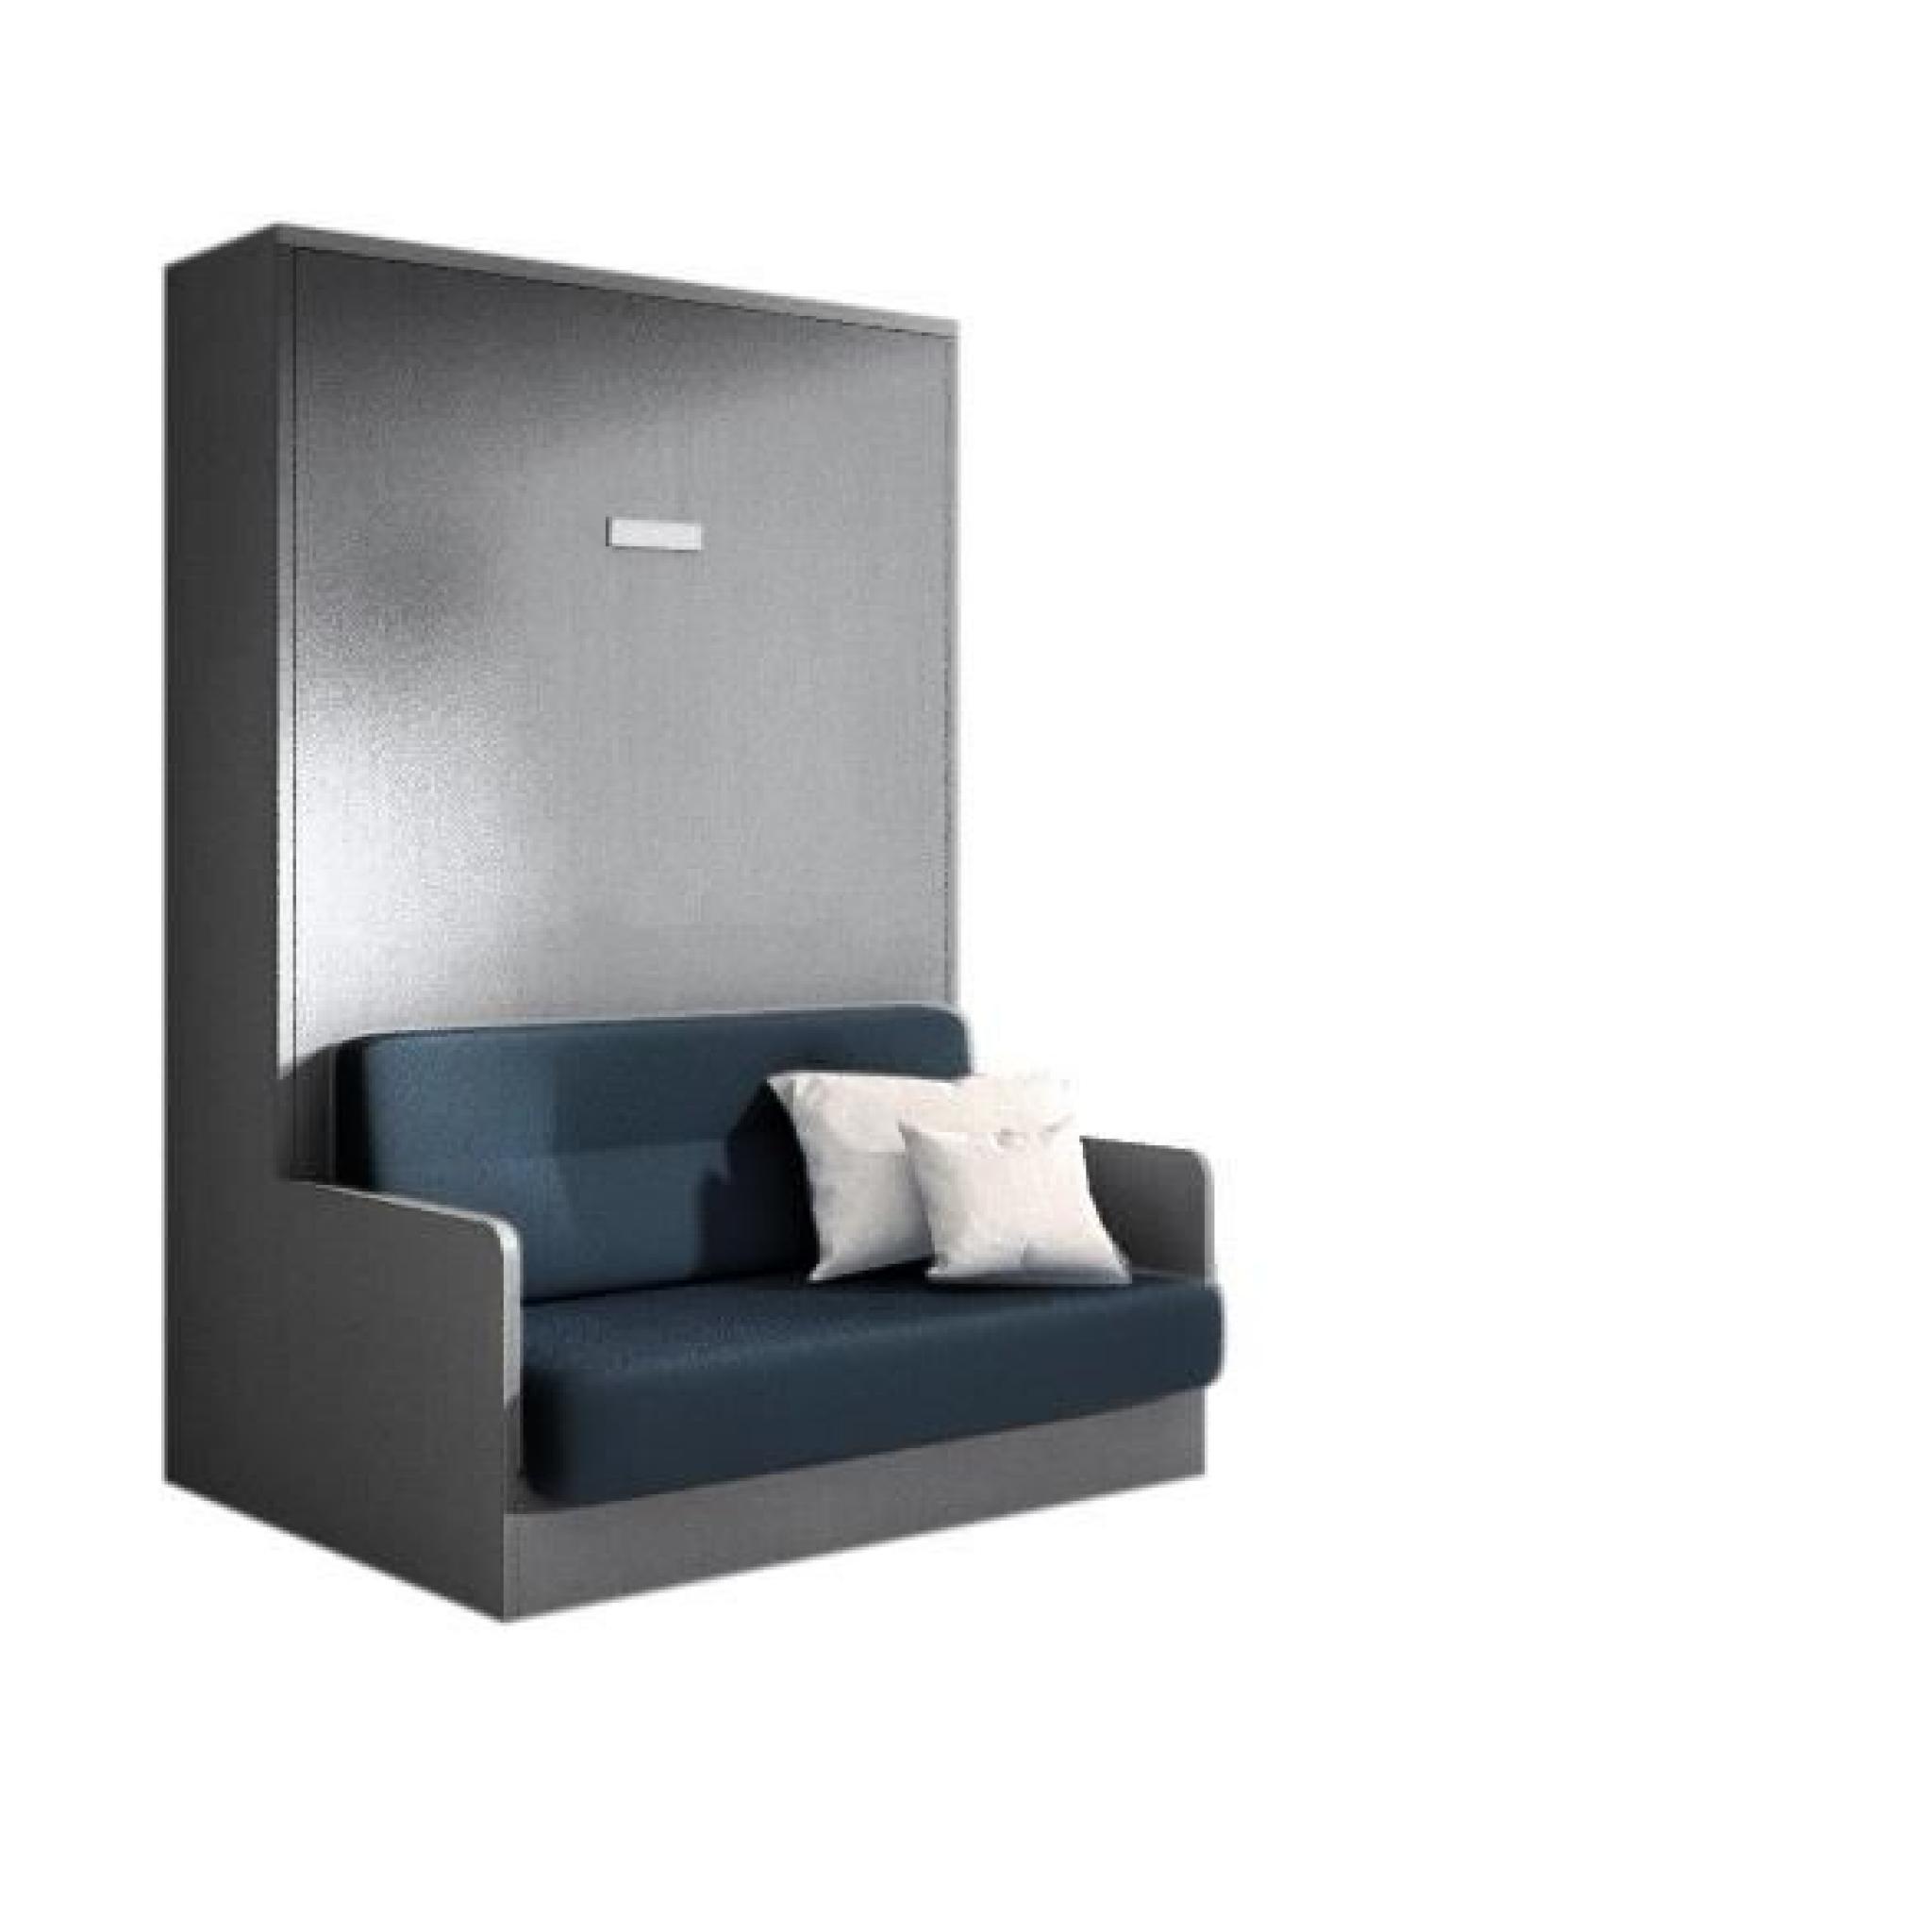 JOY - Armoire lit 140x200 gris mat avec canapé